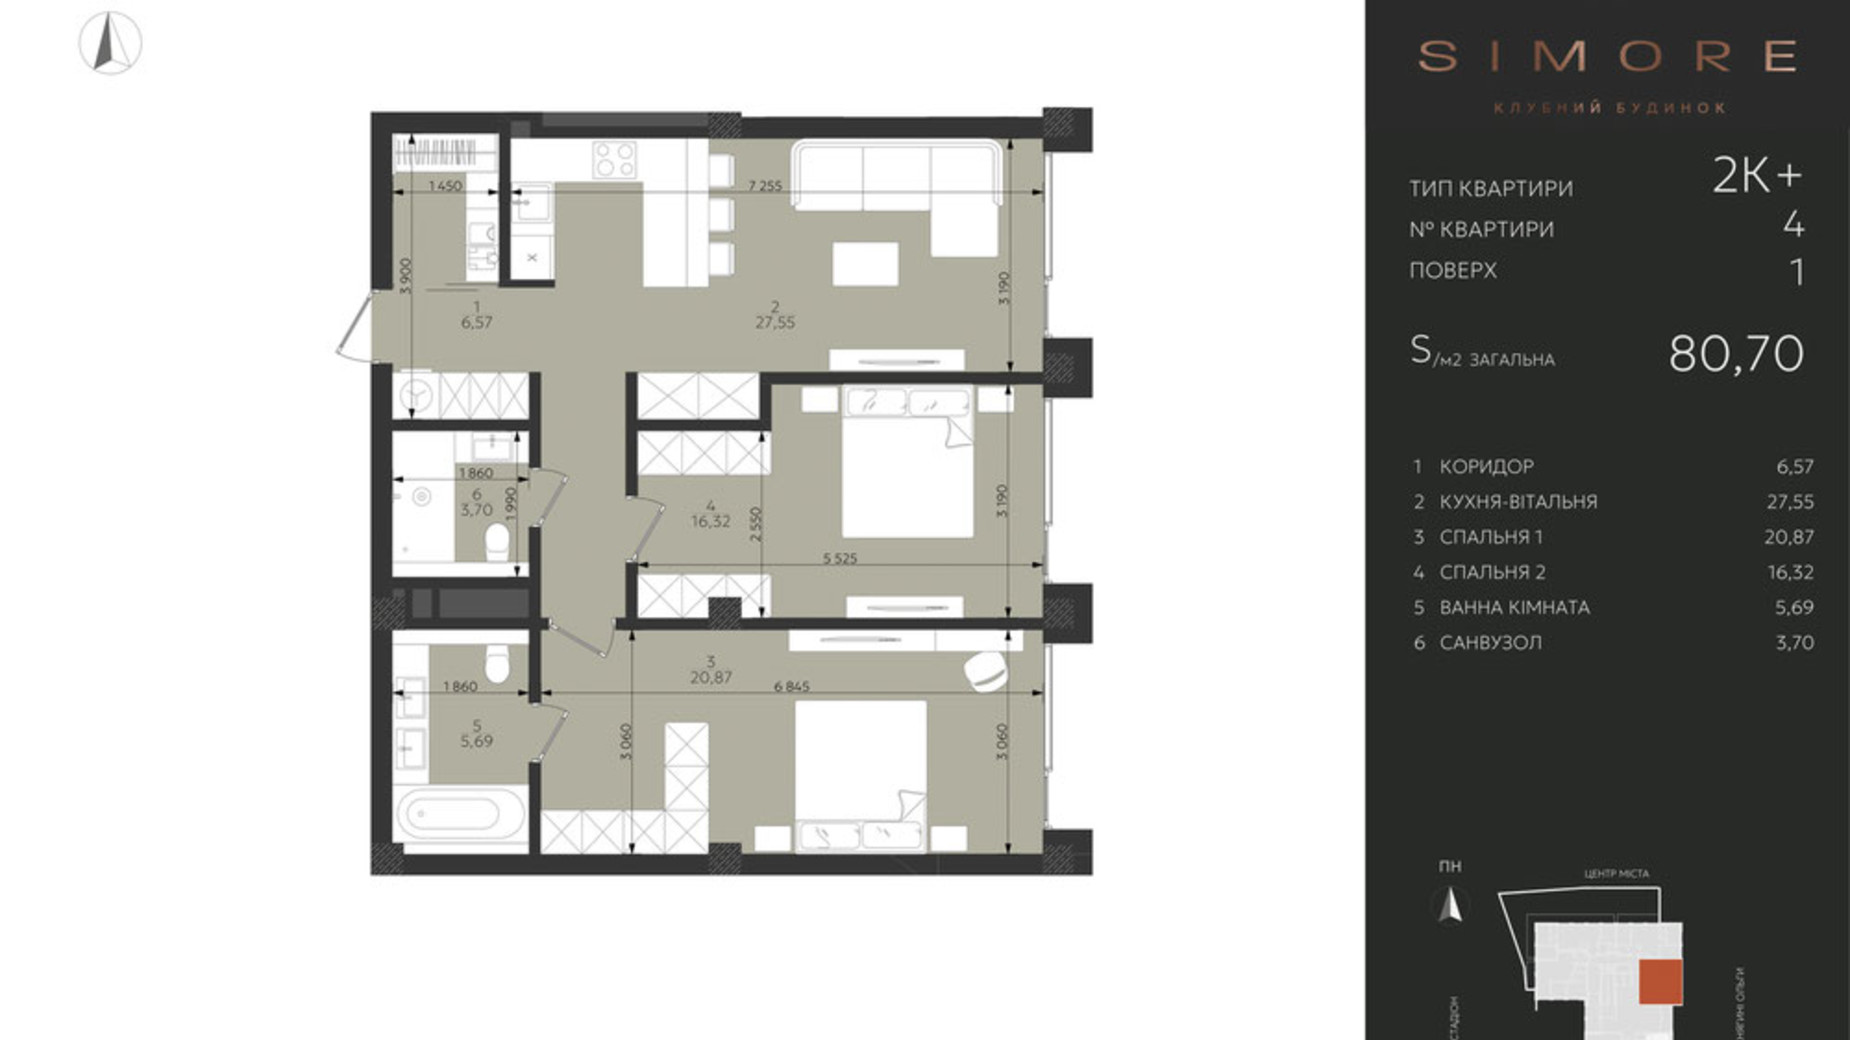 Планировка 2-комнатной квартиры в Клубный дом Simore 80.7 м², фото 702985